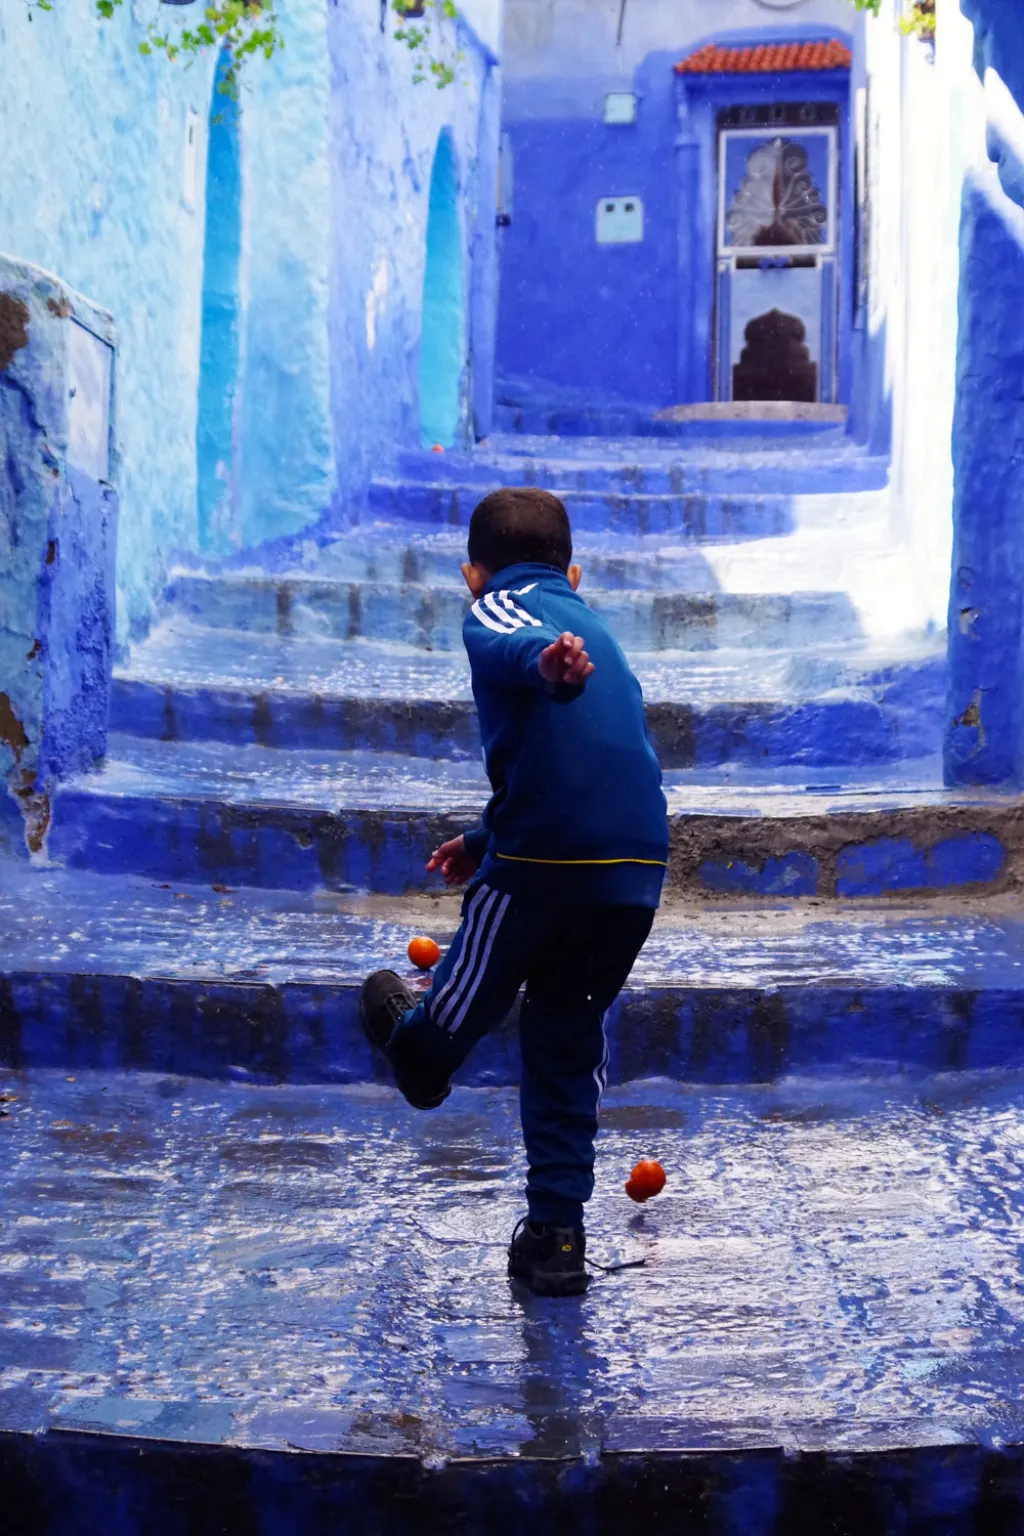 Fotografie vítězky mládežnické kategorie Isabelly Smithové (14 let): Chefchaouen, Maroko. „Tenhle moment mě opravdu zaujal. Obraz dítěte hrajícího si s pomerančem jako s balonem byl přesným opakem toho, co jsem zvyklá vídat ve své zemi, kde si děti hrají s drahými hračkami.“